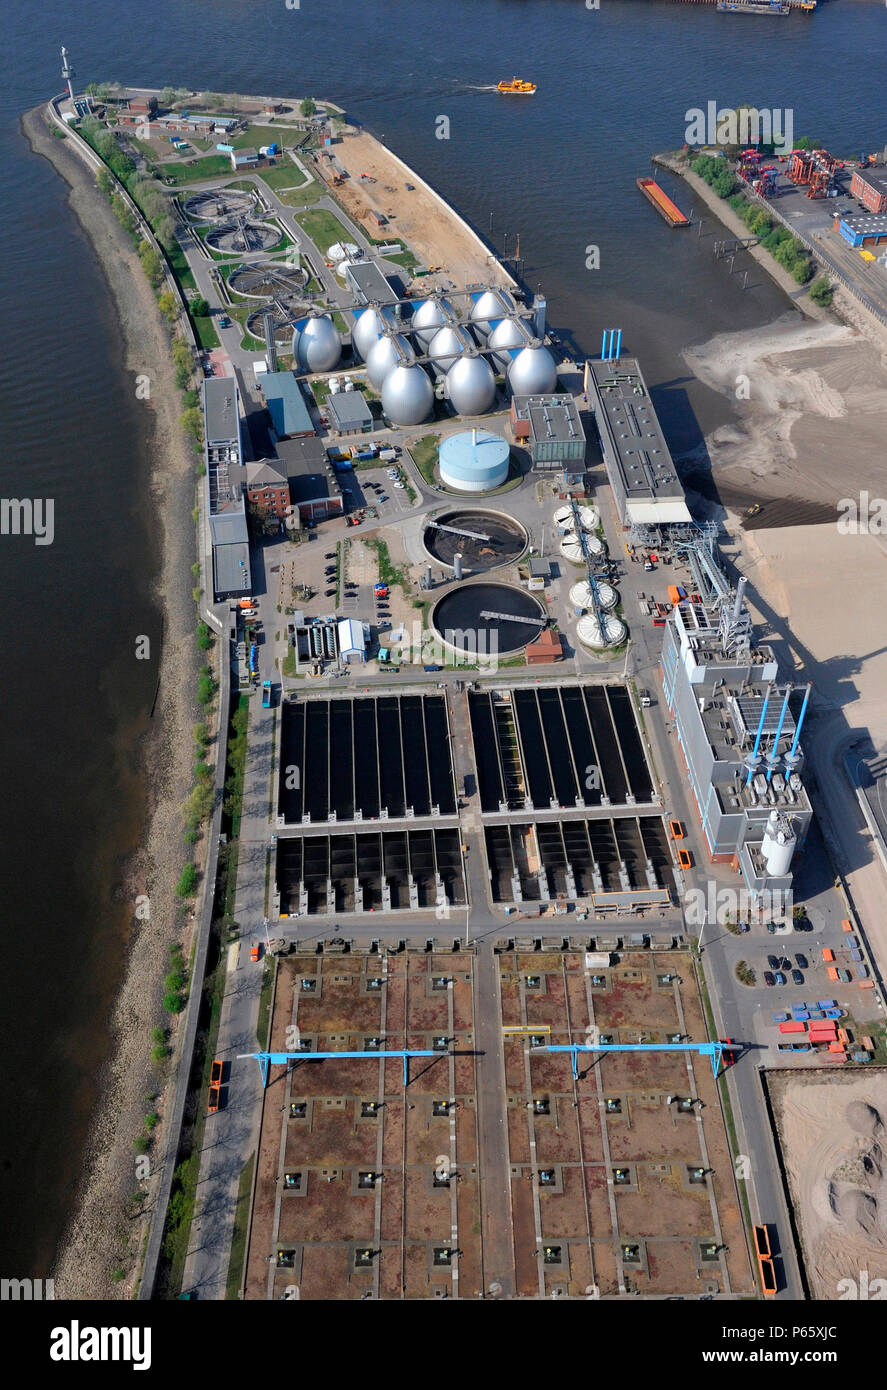 Planta de tratamiento de agua, Hamburgo, Alemania, vista aérea Foto de stock